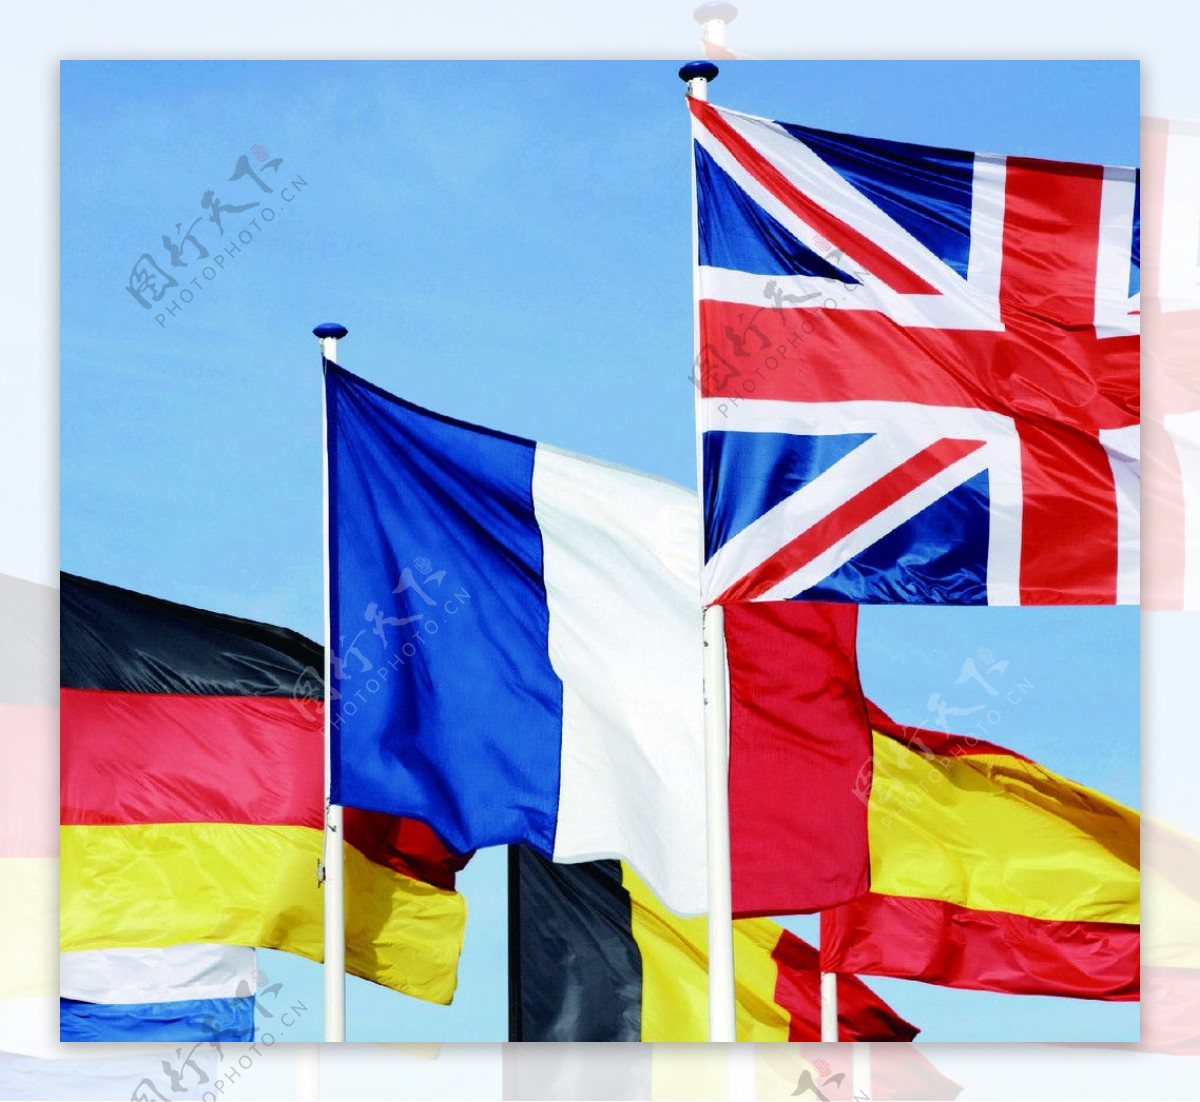 德国英国国旗图片